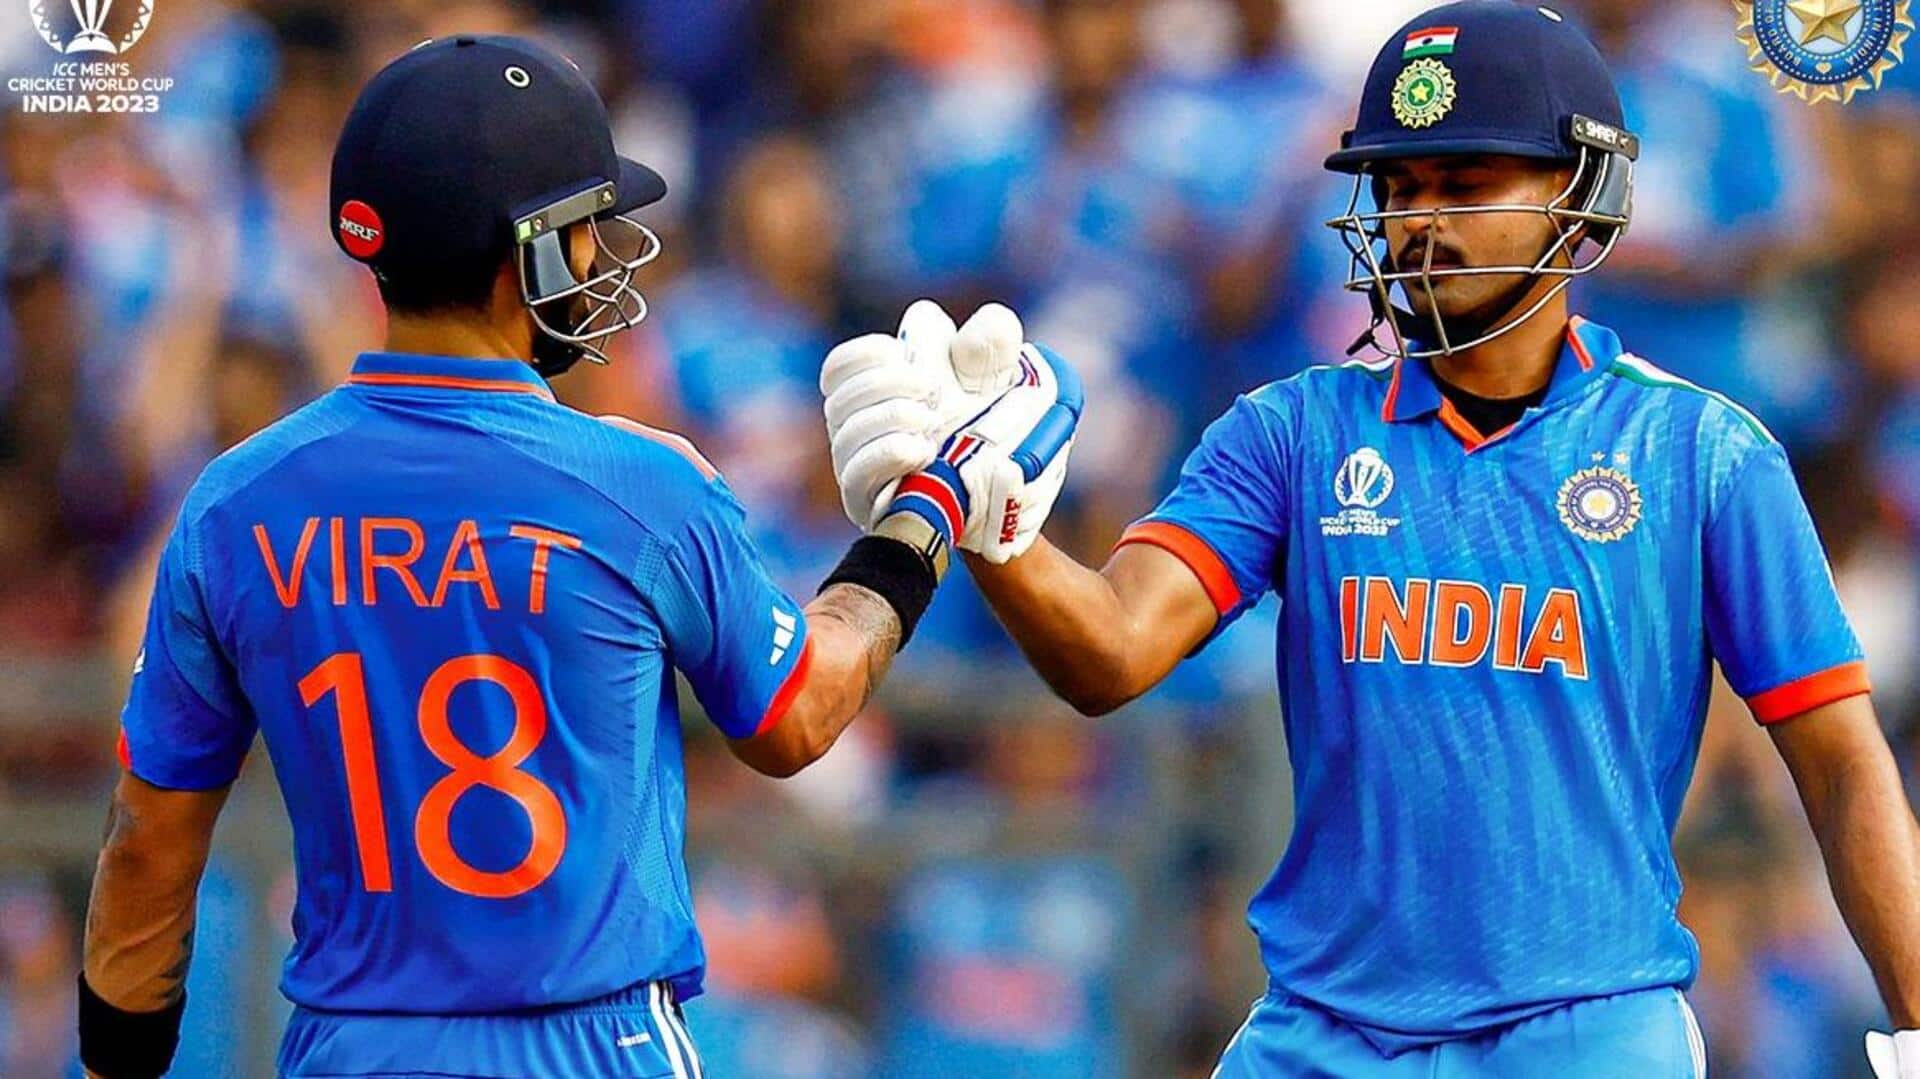 भारत बनाम न्यूजीलैंड: विराट कोहली और श्रेयस अय्यर के बीच 163 रनों की साझेदारी, बनाया रिकॉर्ड